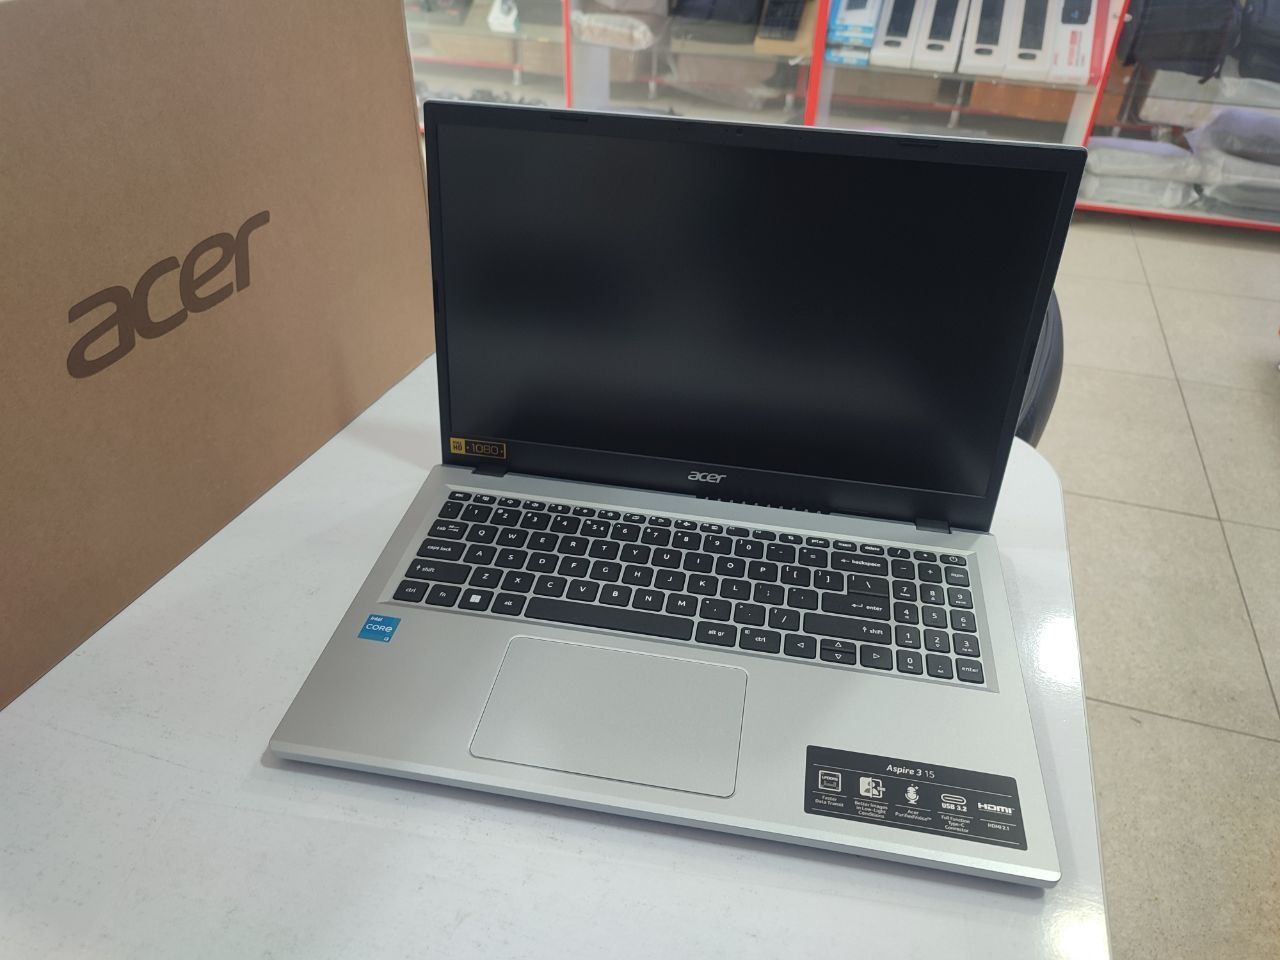 Acer core i3 13 avlod yangi noutbuk